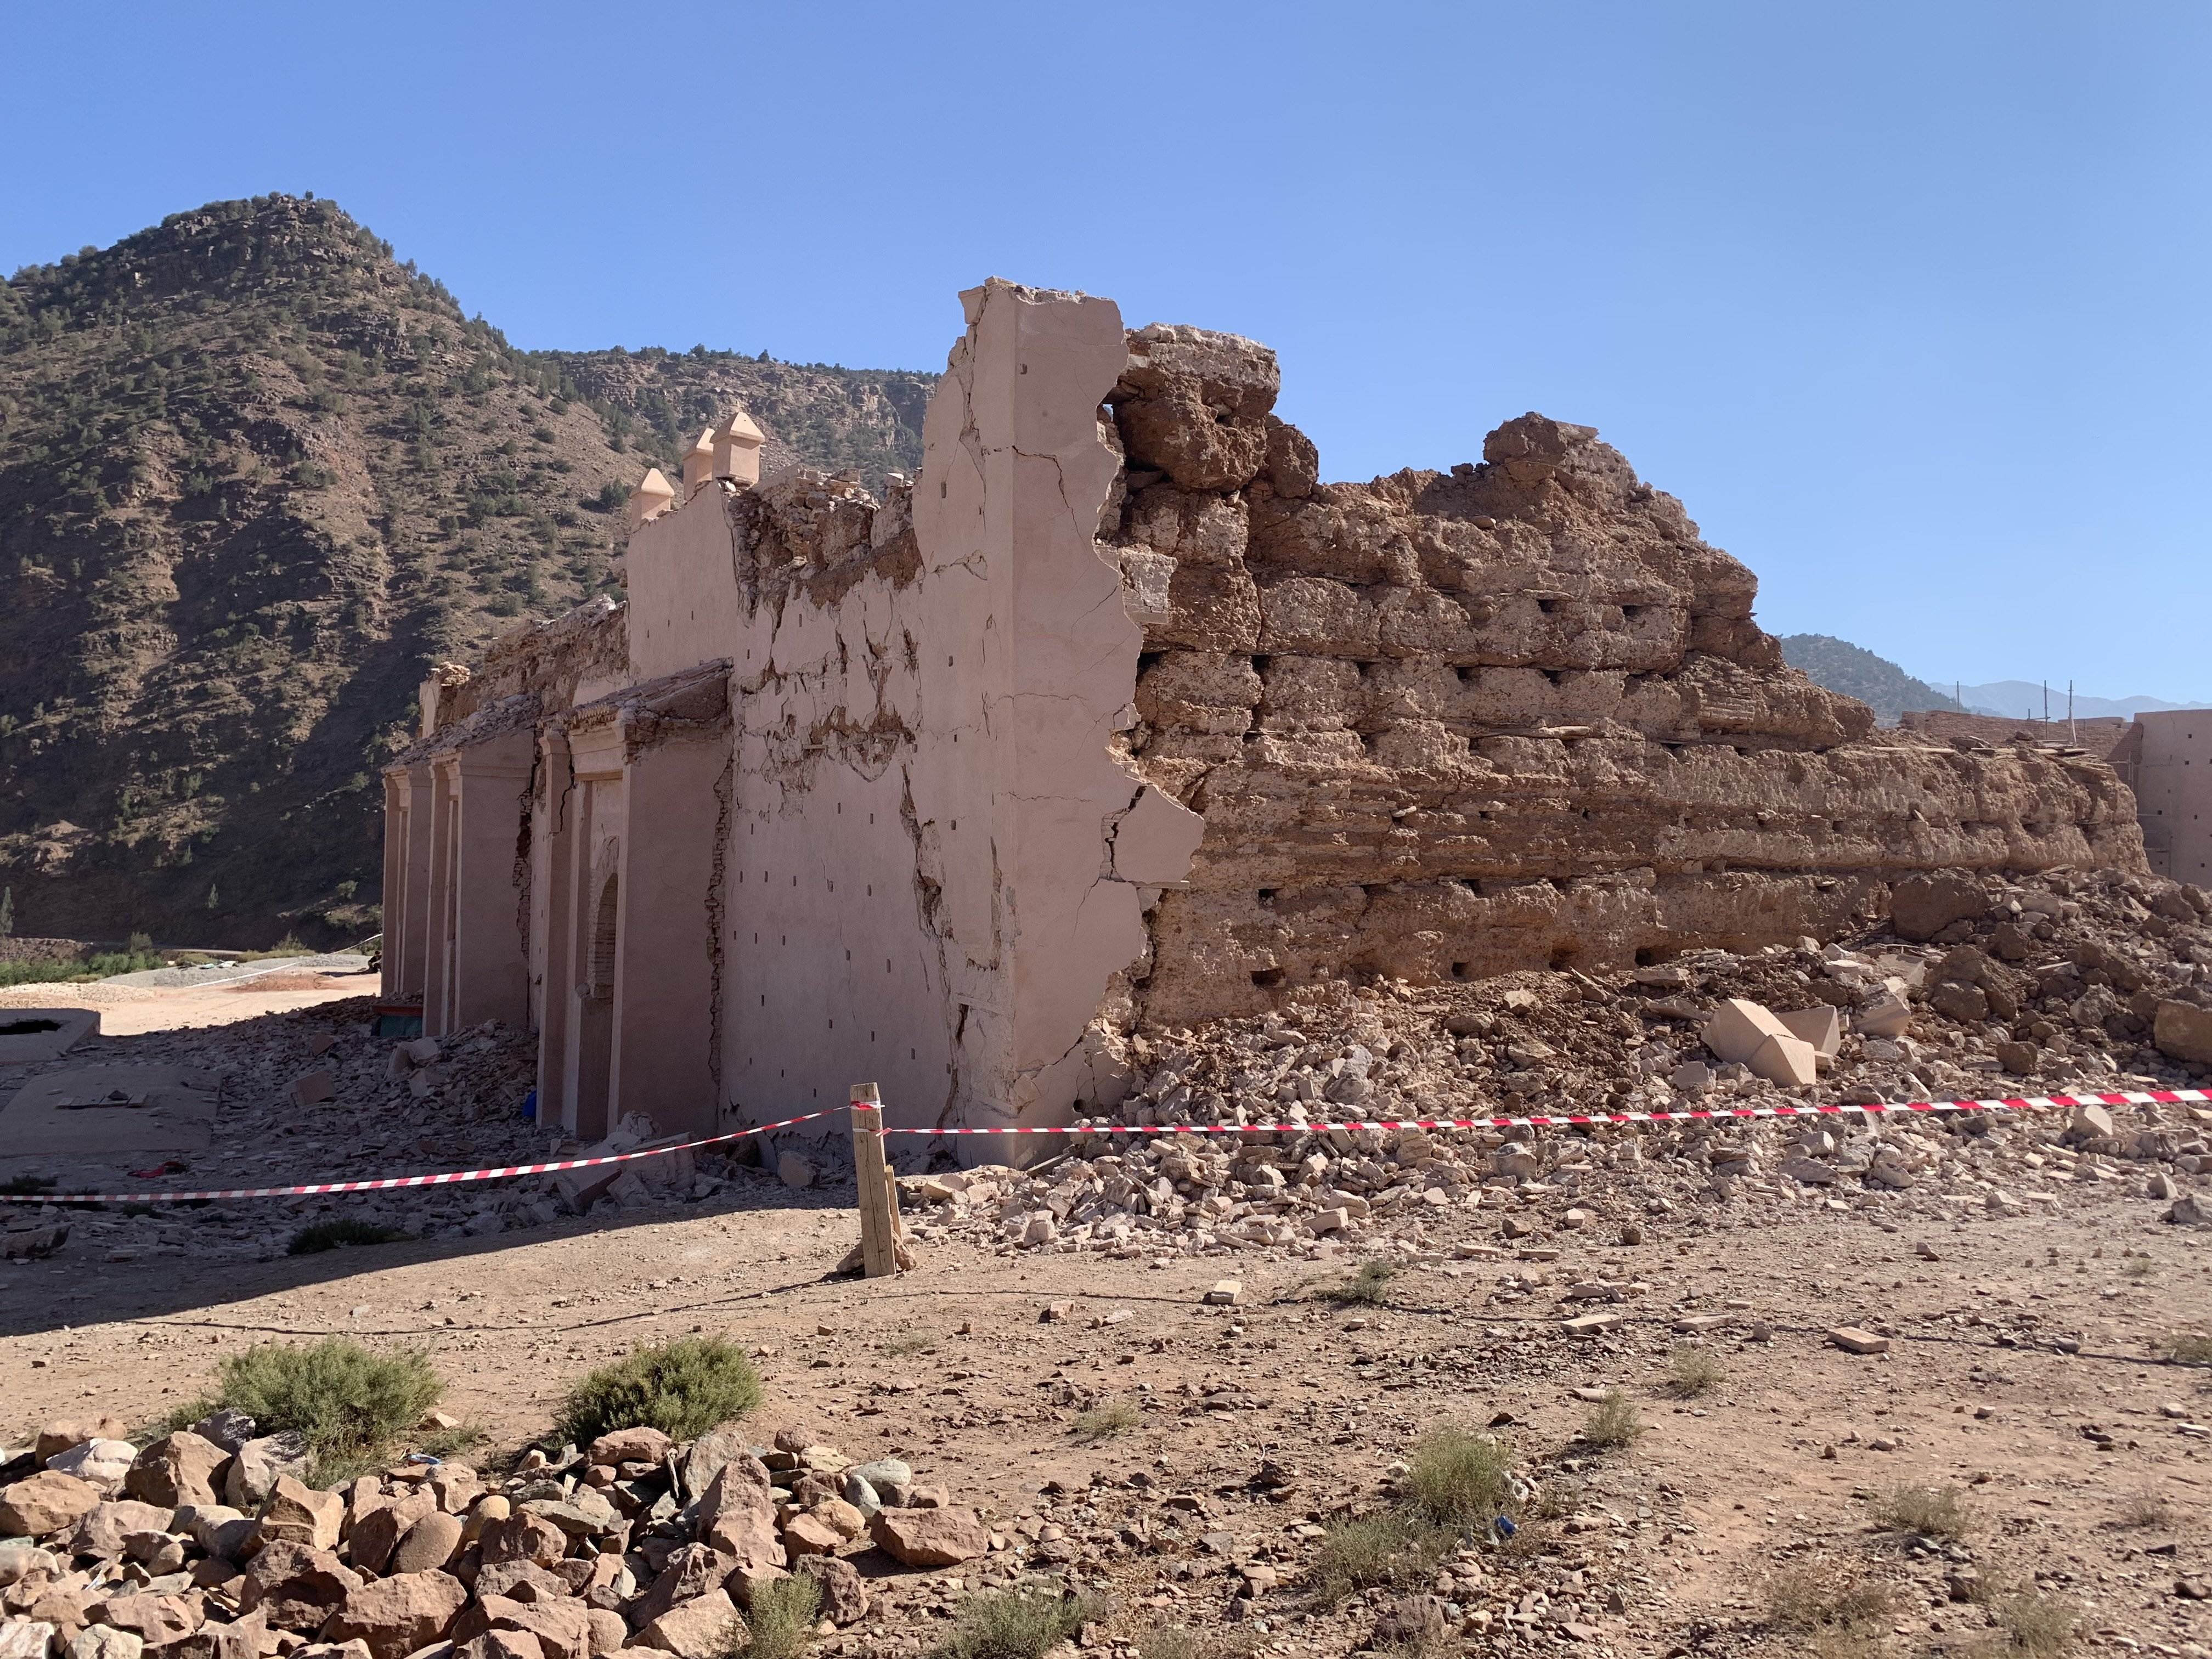 Així ha quedat la mesquita de Tinmel, una de les més antigues del Marroc: “Esborrats de la història”